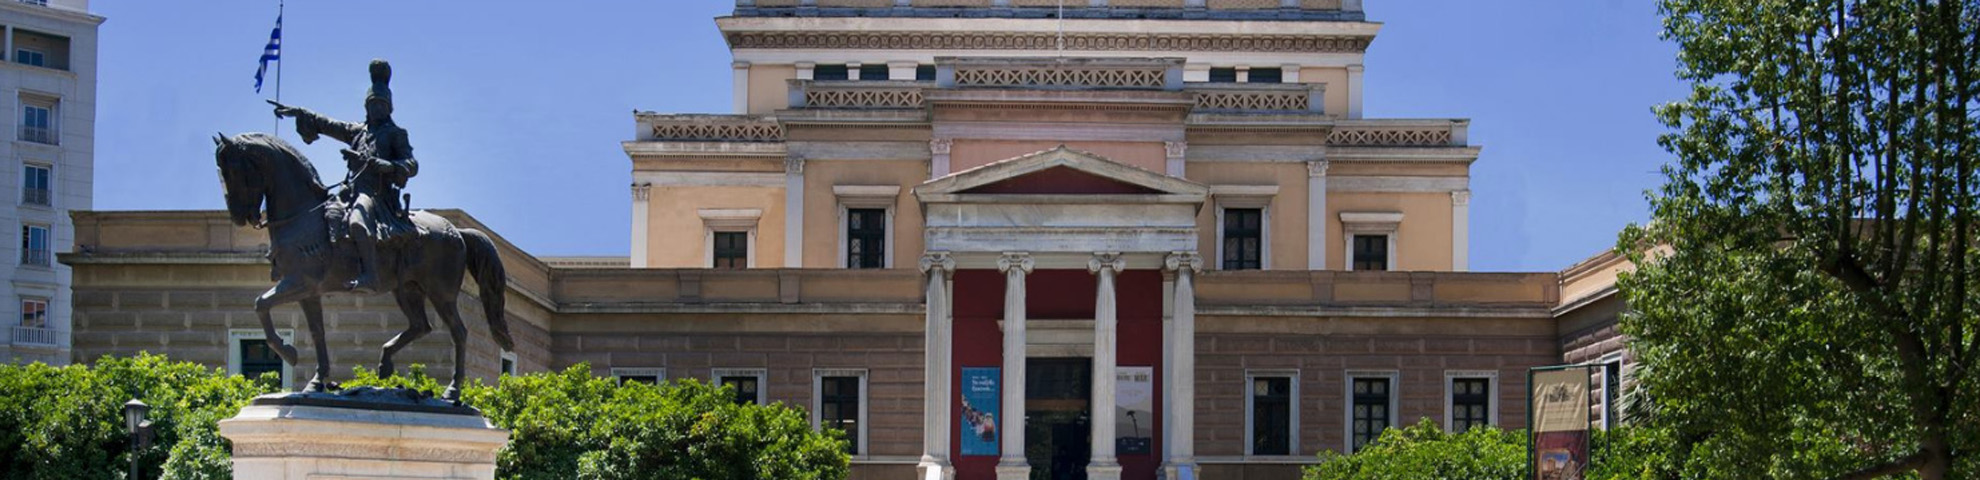 Κατασκευή eshop Εθνικό Ιστορικό Μουσείο